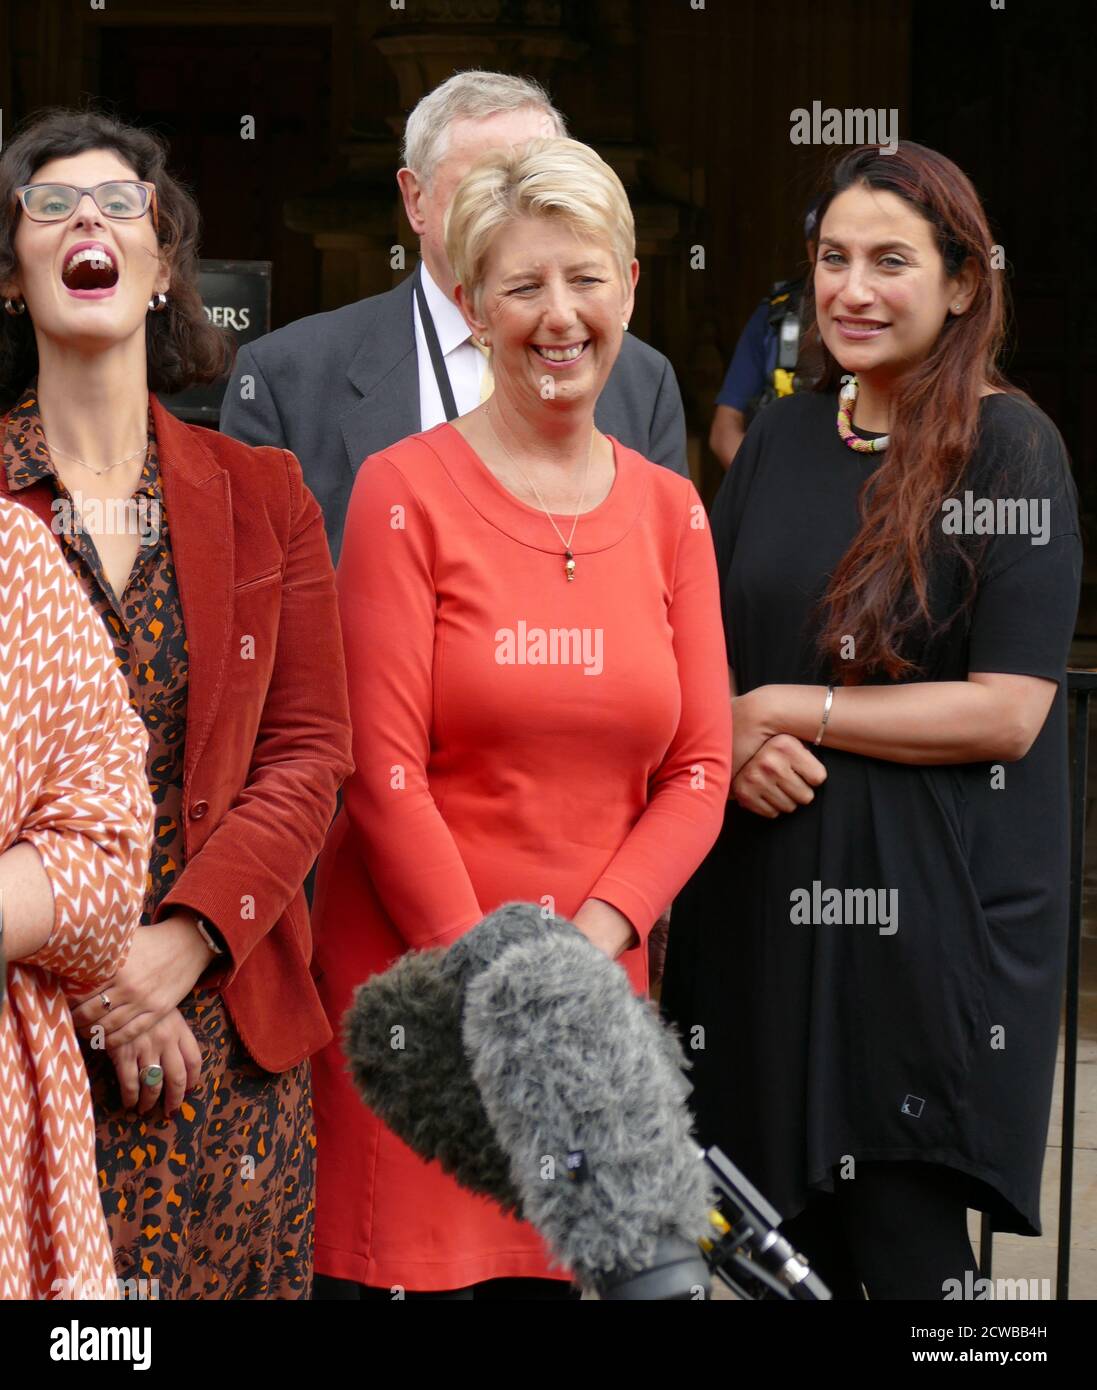 Leyla Moran, Angela Smith et Luciana Berger, députés libéraux démocrates du Parlement britannique, reviennent à la Chambre des communes après que la Cour suprême ait renversé la Prorogation du Parlement en septembre 2019. Banque D'Images